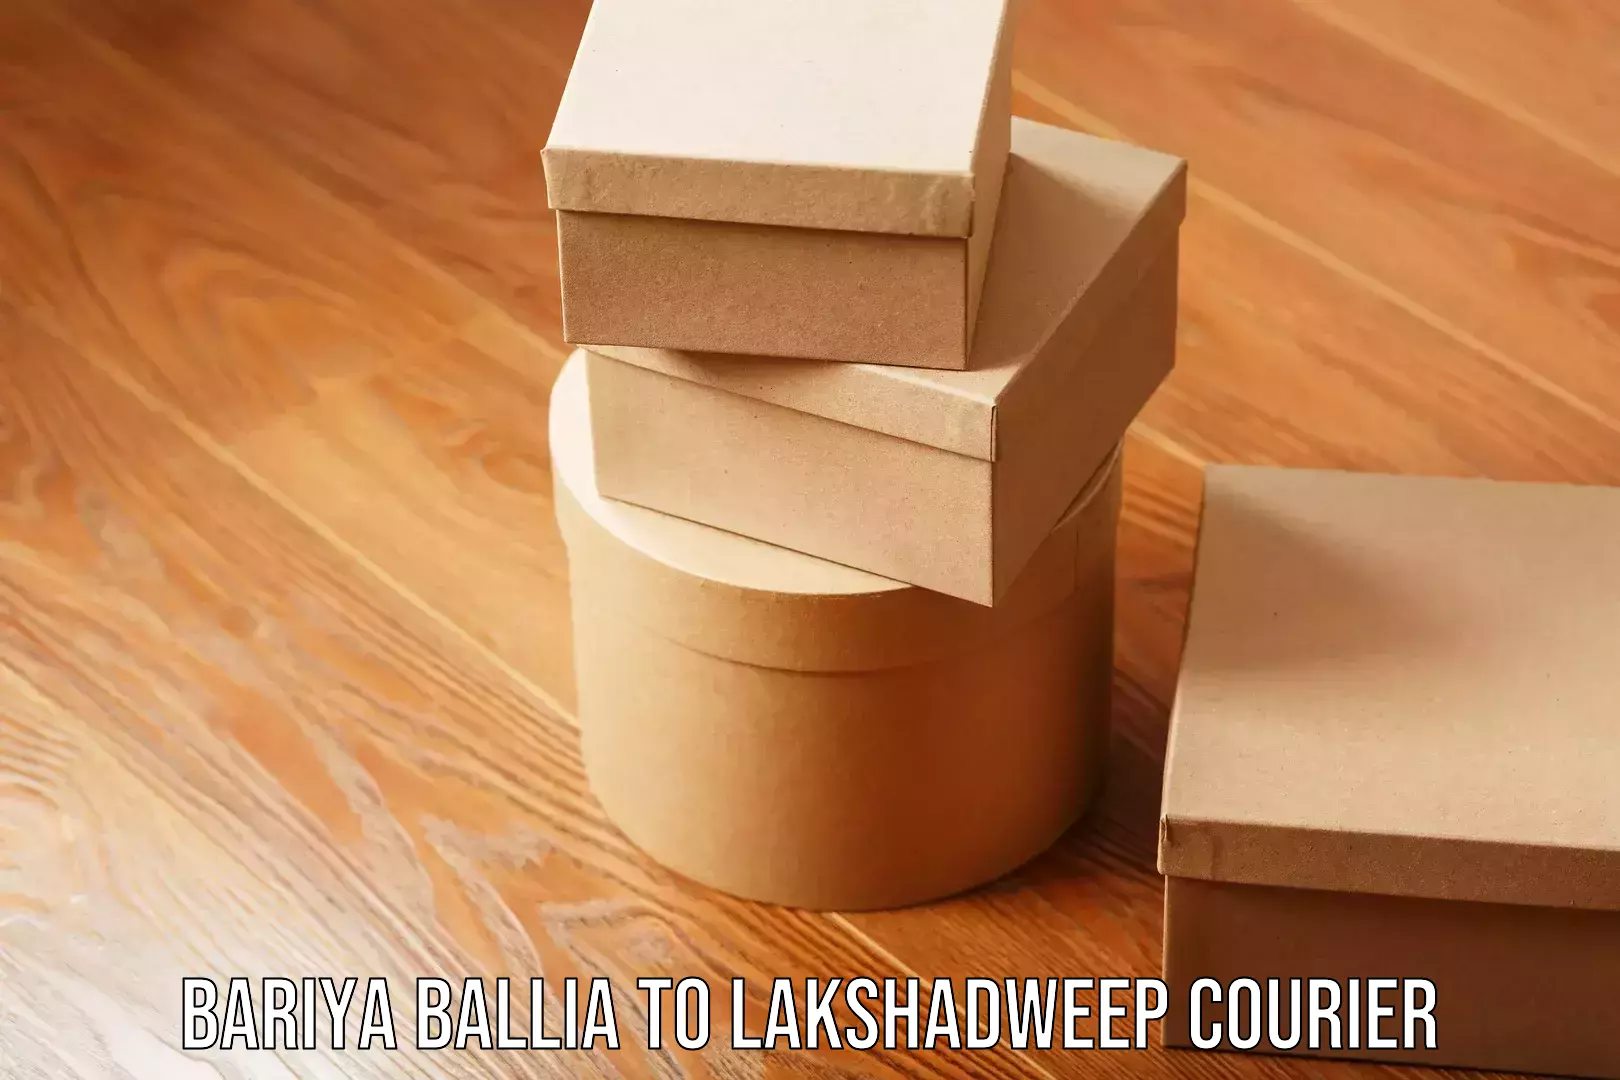 Individual parcel service Bariya Ballia to Lakshadweep